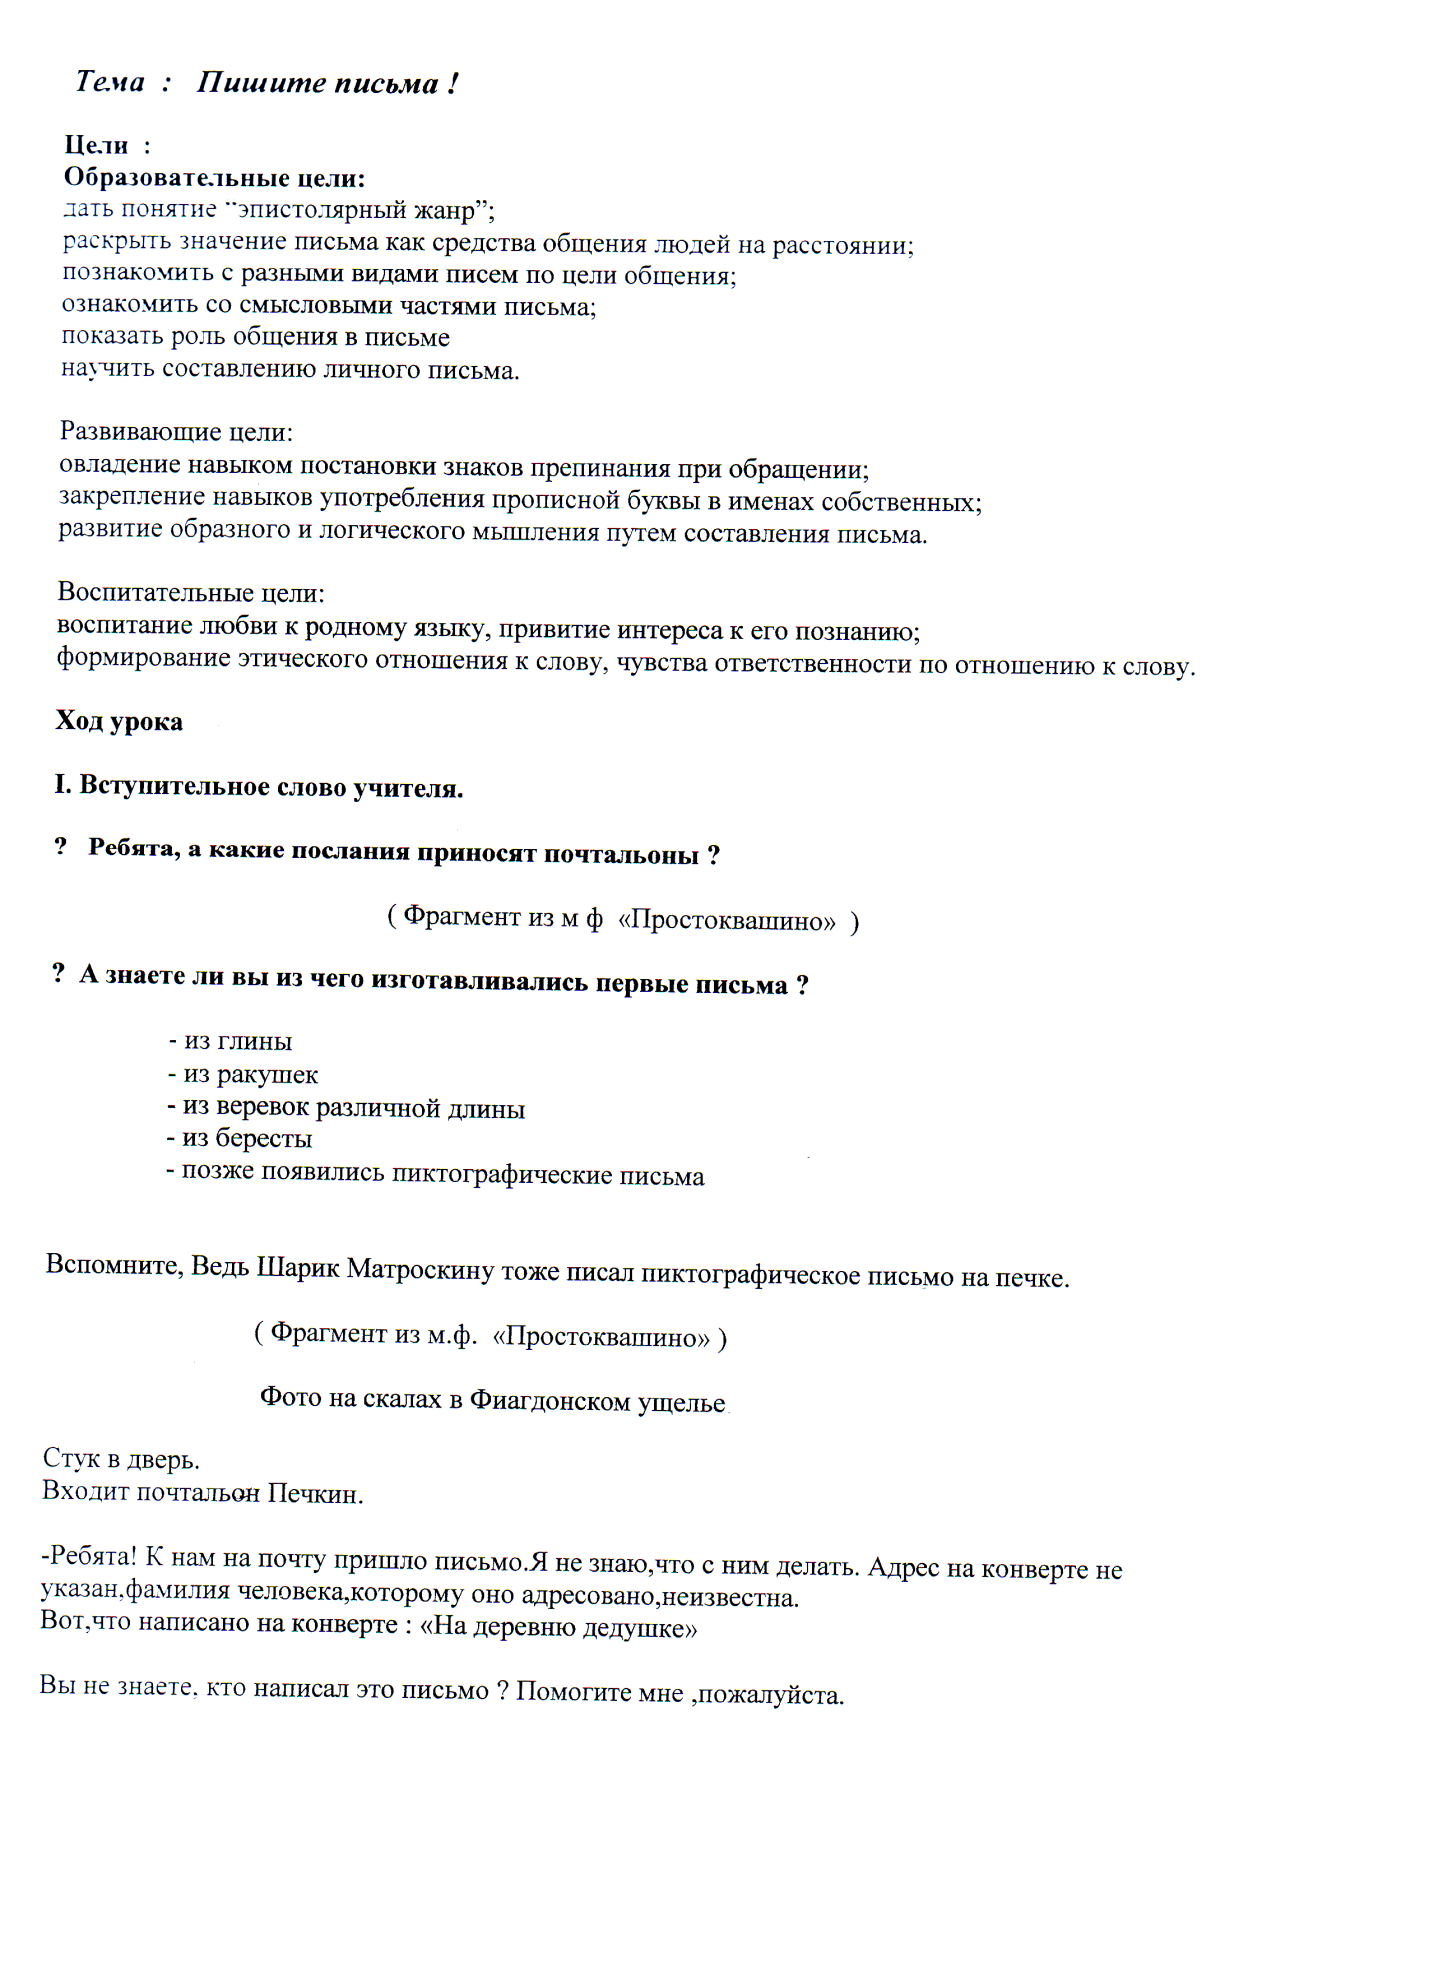 Пишите письма. Урок русского языка в 5 классе с использованием интерактивной доски.